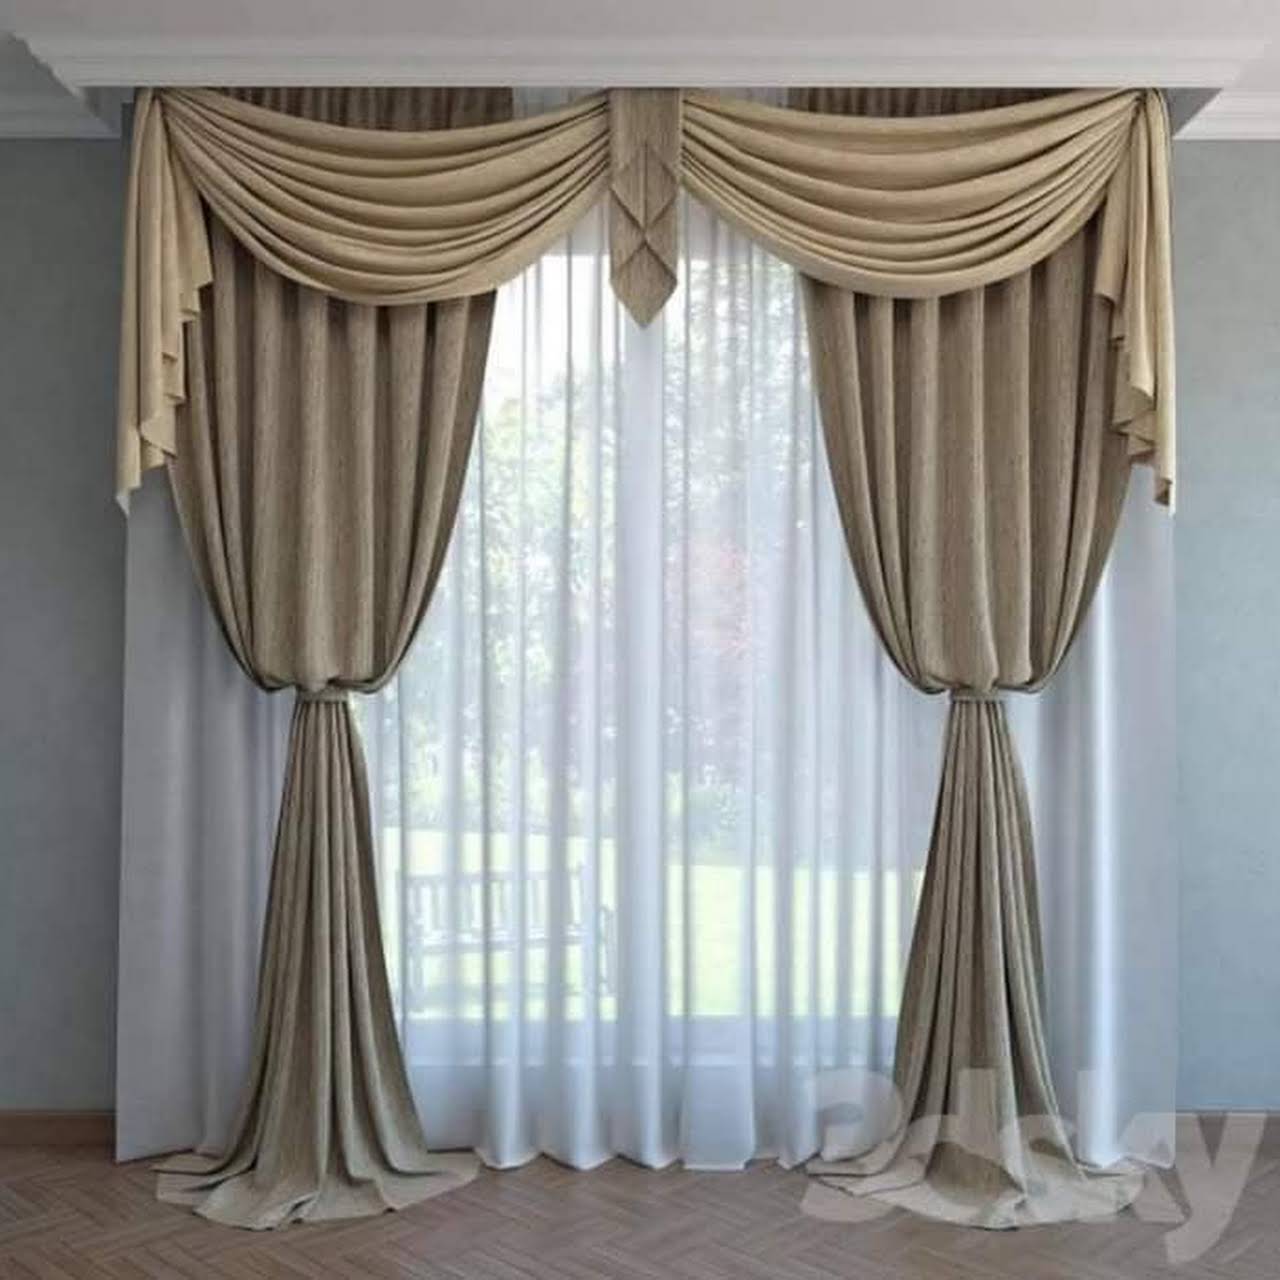 Curtain 1. Ламбрекены для штор. Классические шторы. Портьеры для гостиной с ламбрекеном. Шикарные шторы для зала.